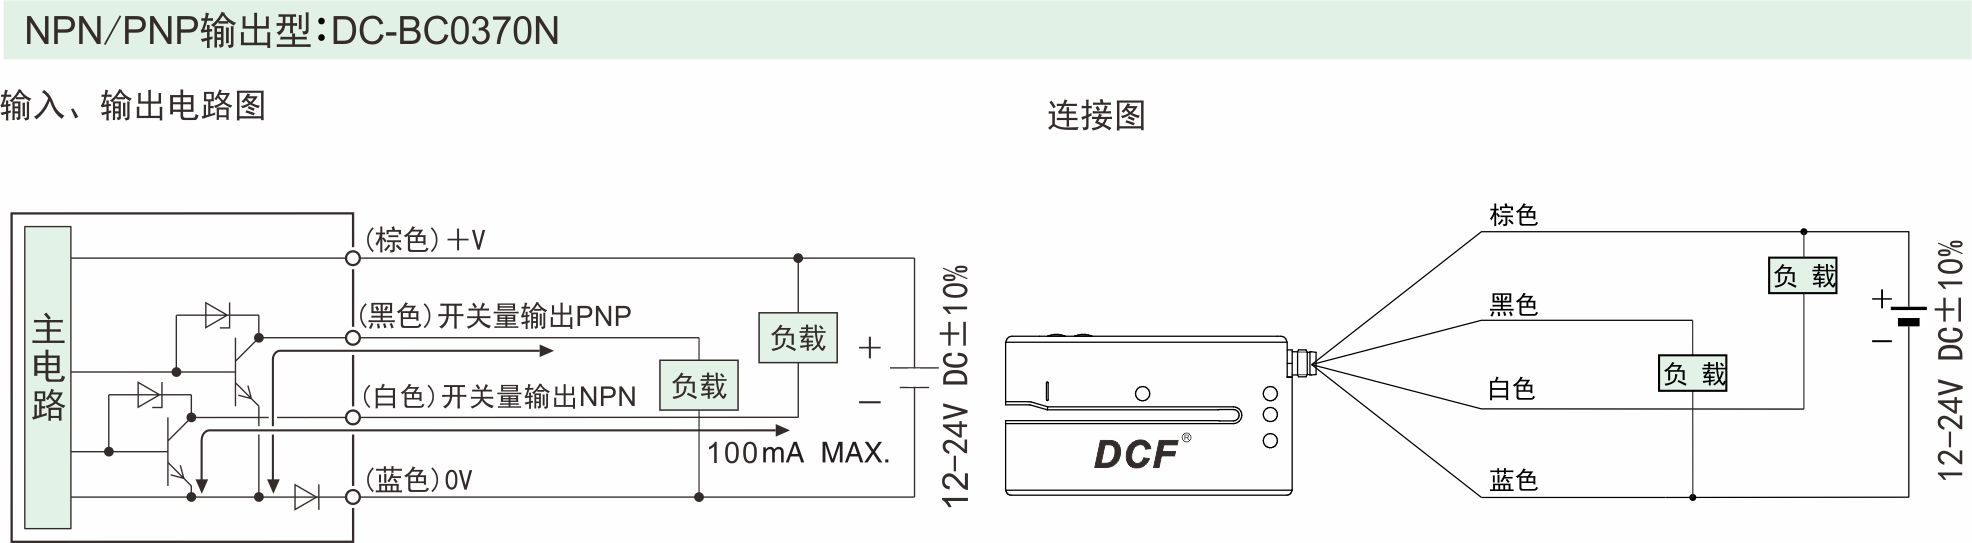 DC-BC0370N接线图